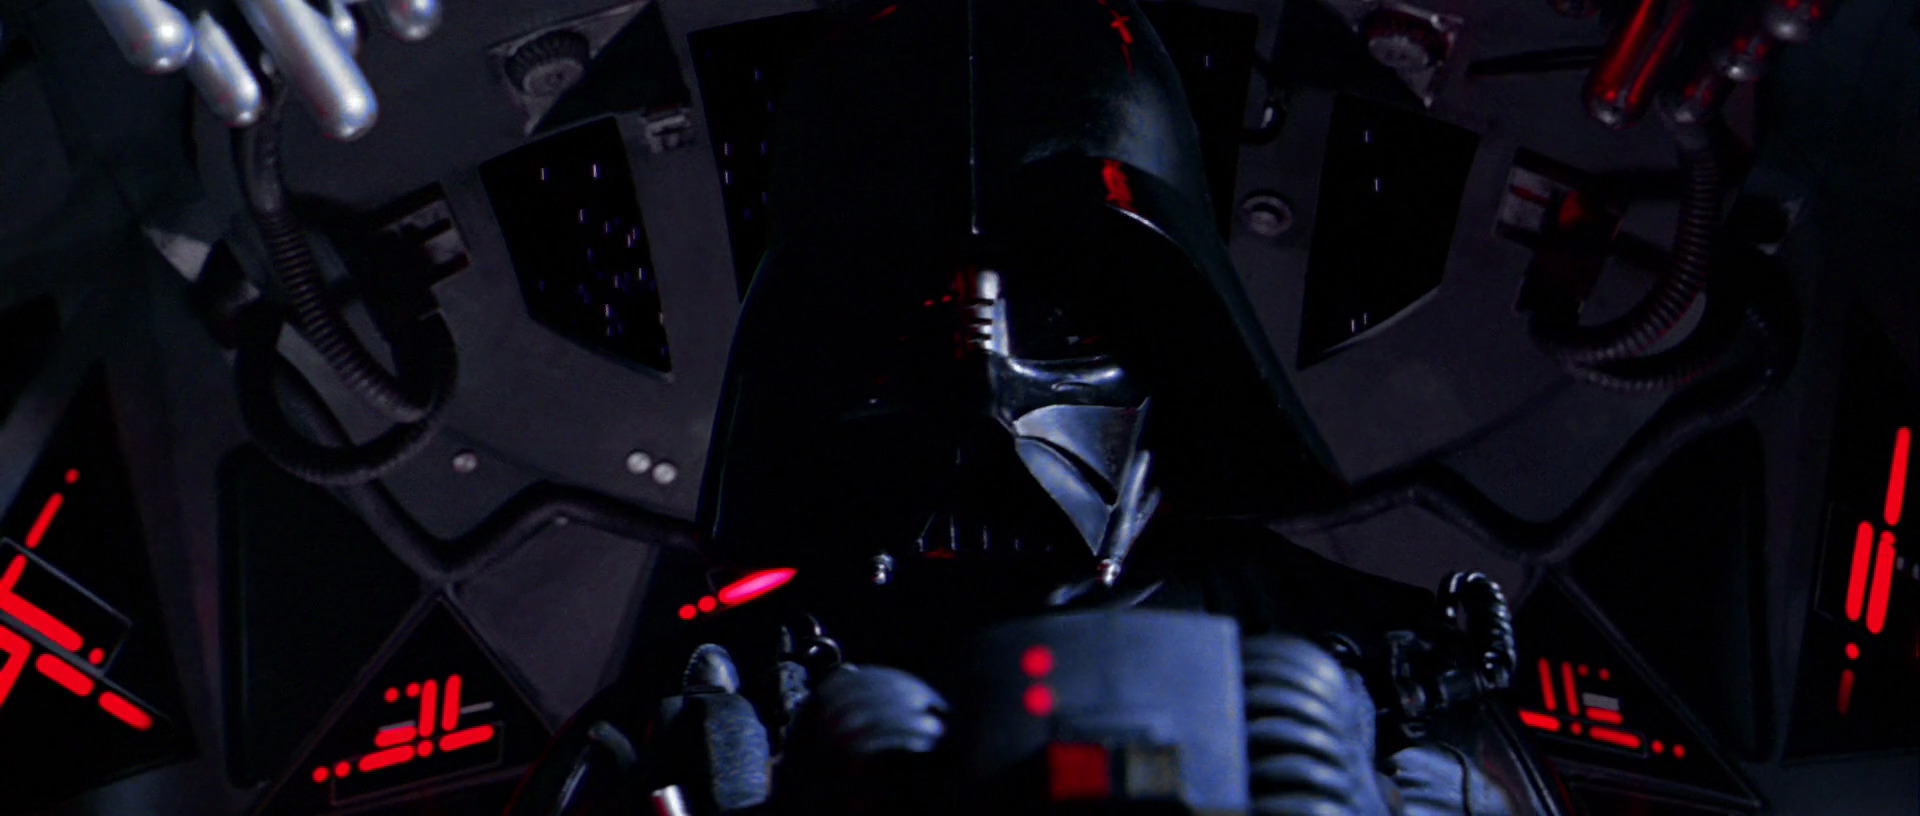 Vader Flying - Ve Got You Now Star Wars - HD Wallpaper 